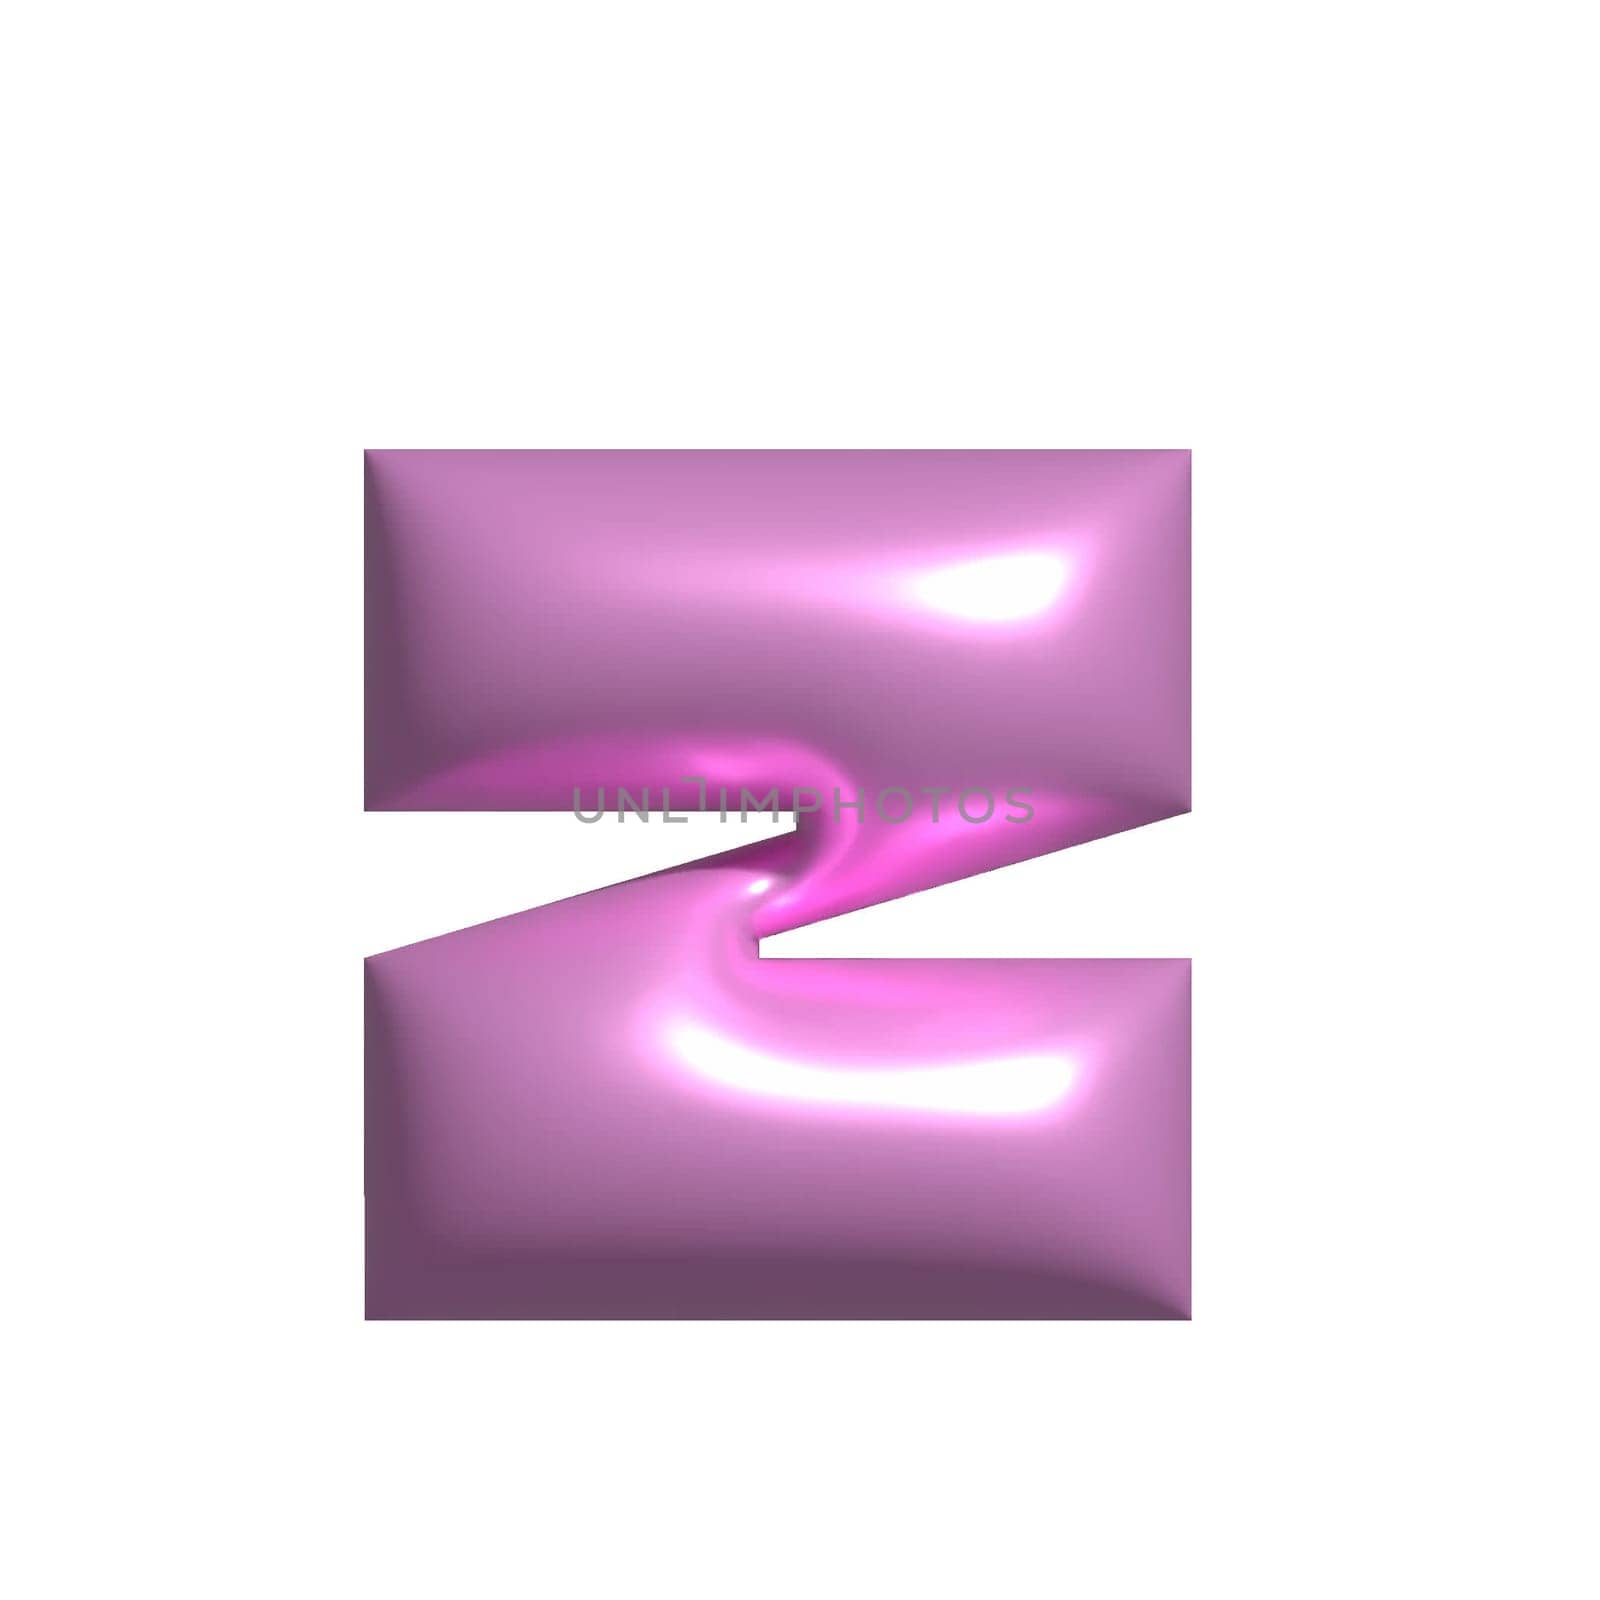 Pink shiny metal shiny reflective letter Z 3D illustration